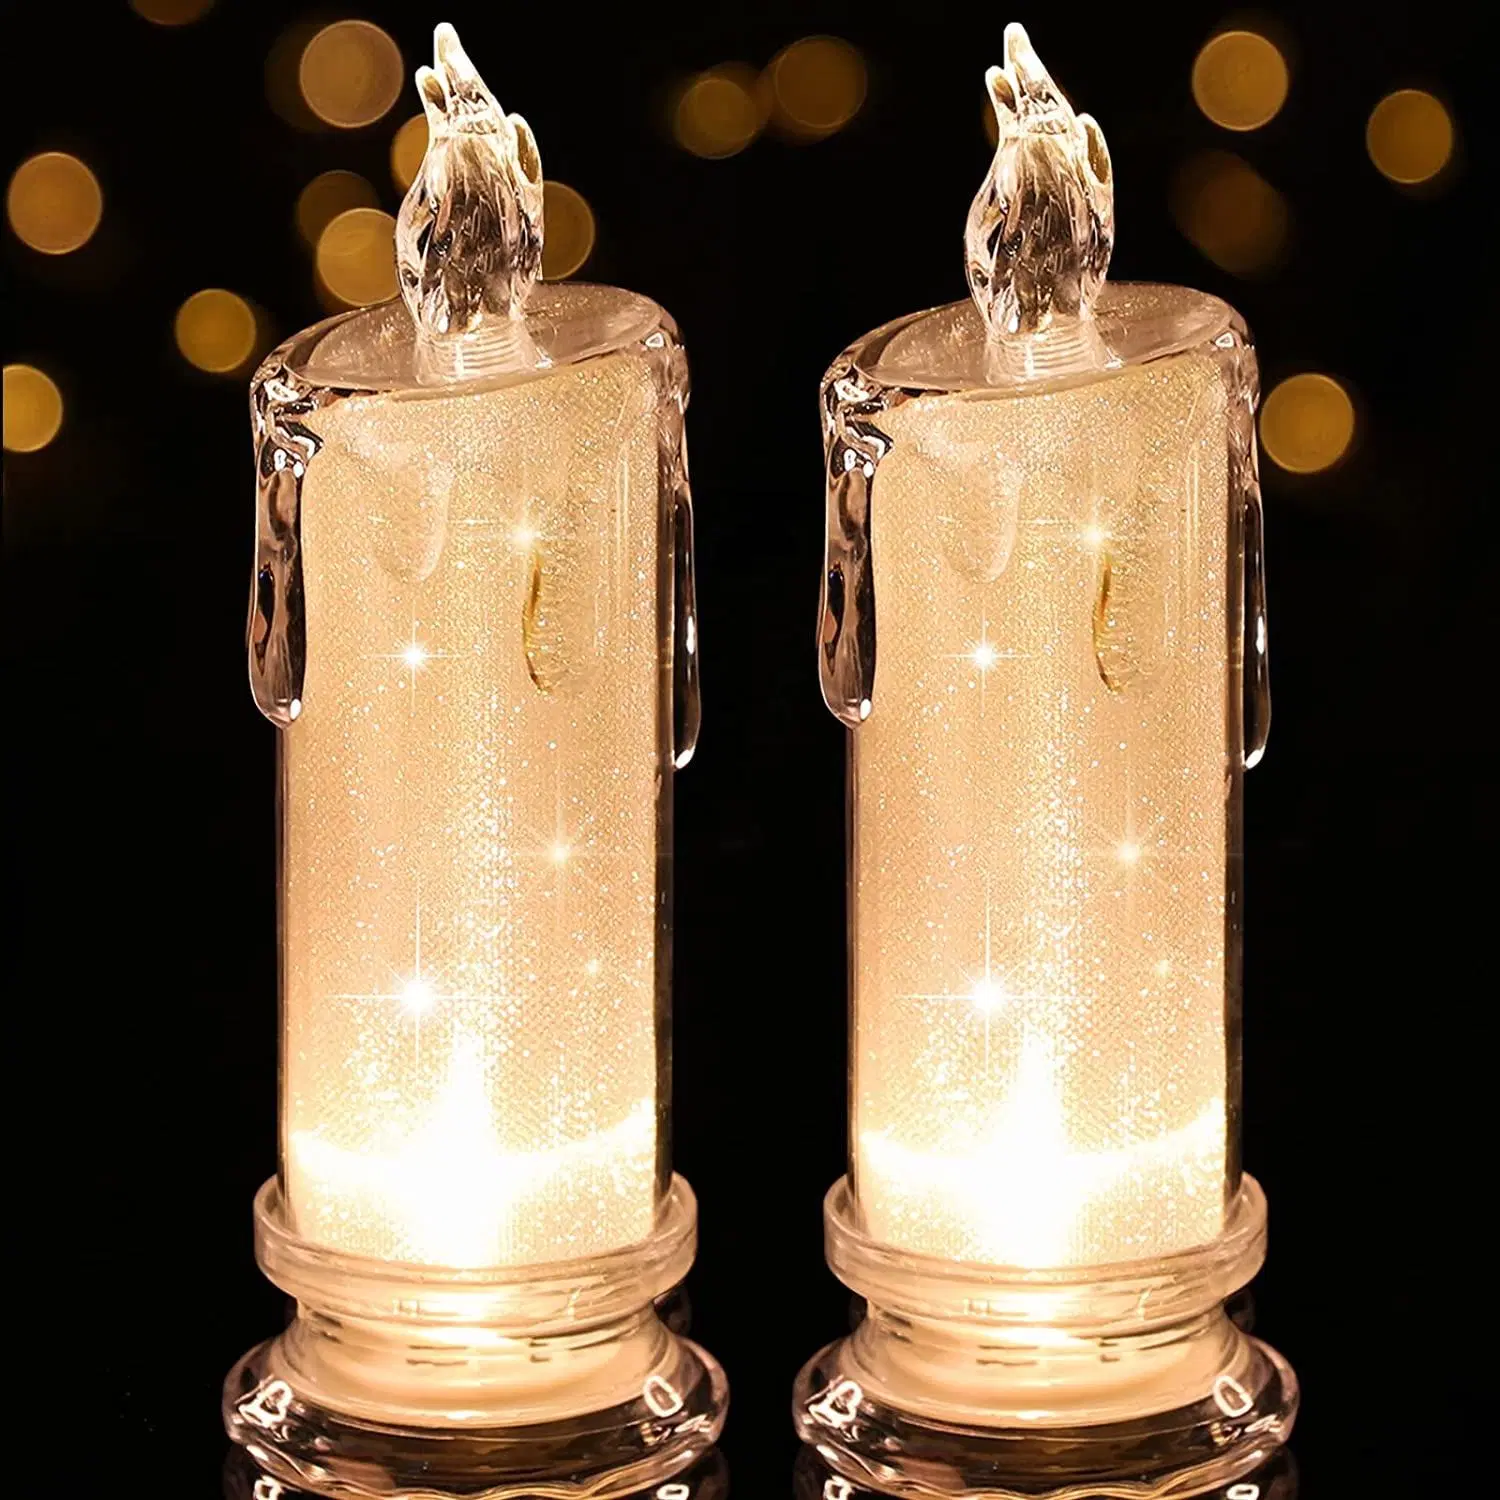 Velas LED sem chamas piscando Pillar LED velas a bateria velas operadas por velas Para decorações da casa do casamento do partido